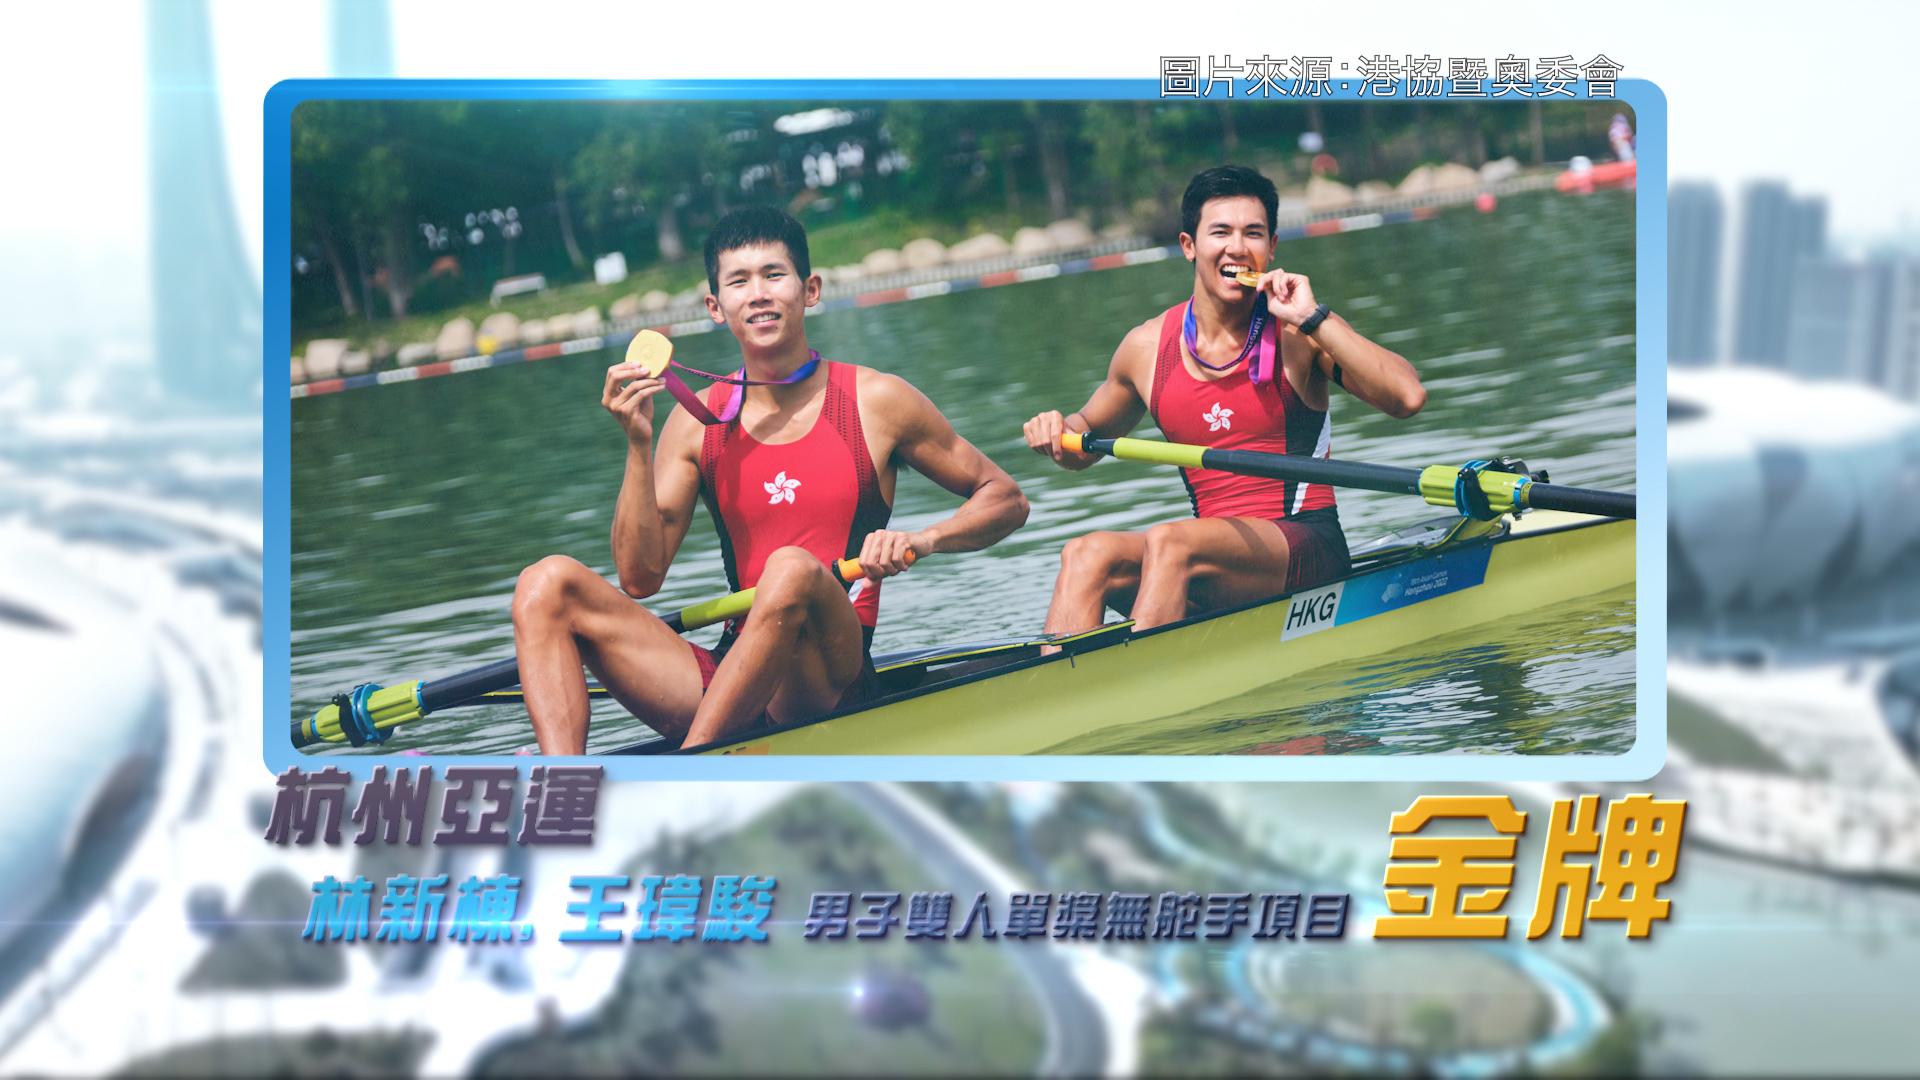 恭喜香港赛艇代表林新栋、王玮骏于杭州亚运为港队夺得首面金牌